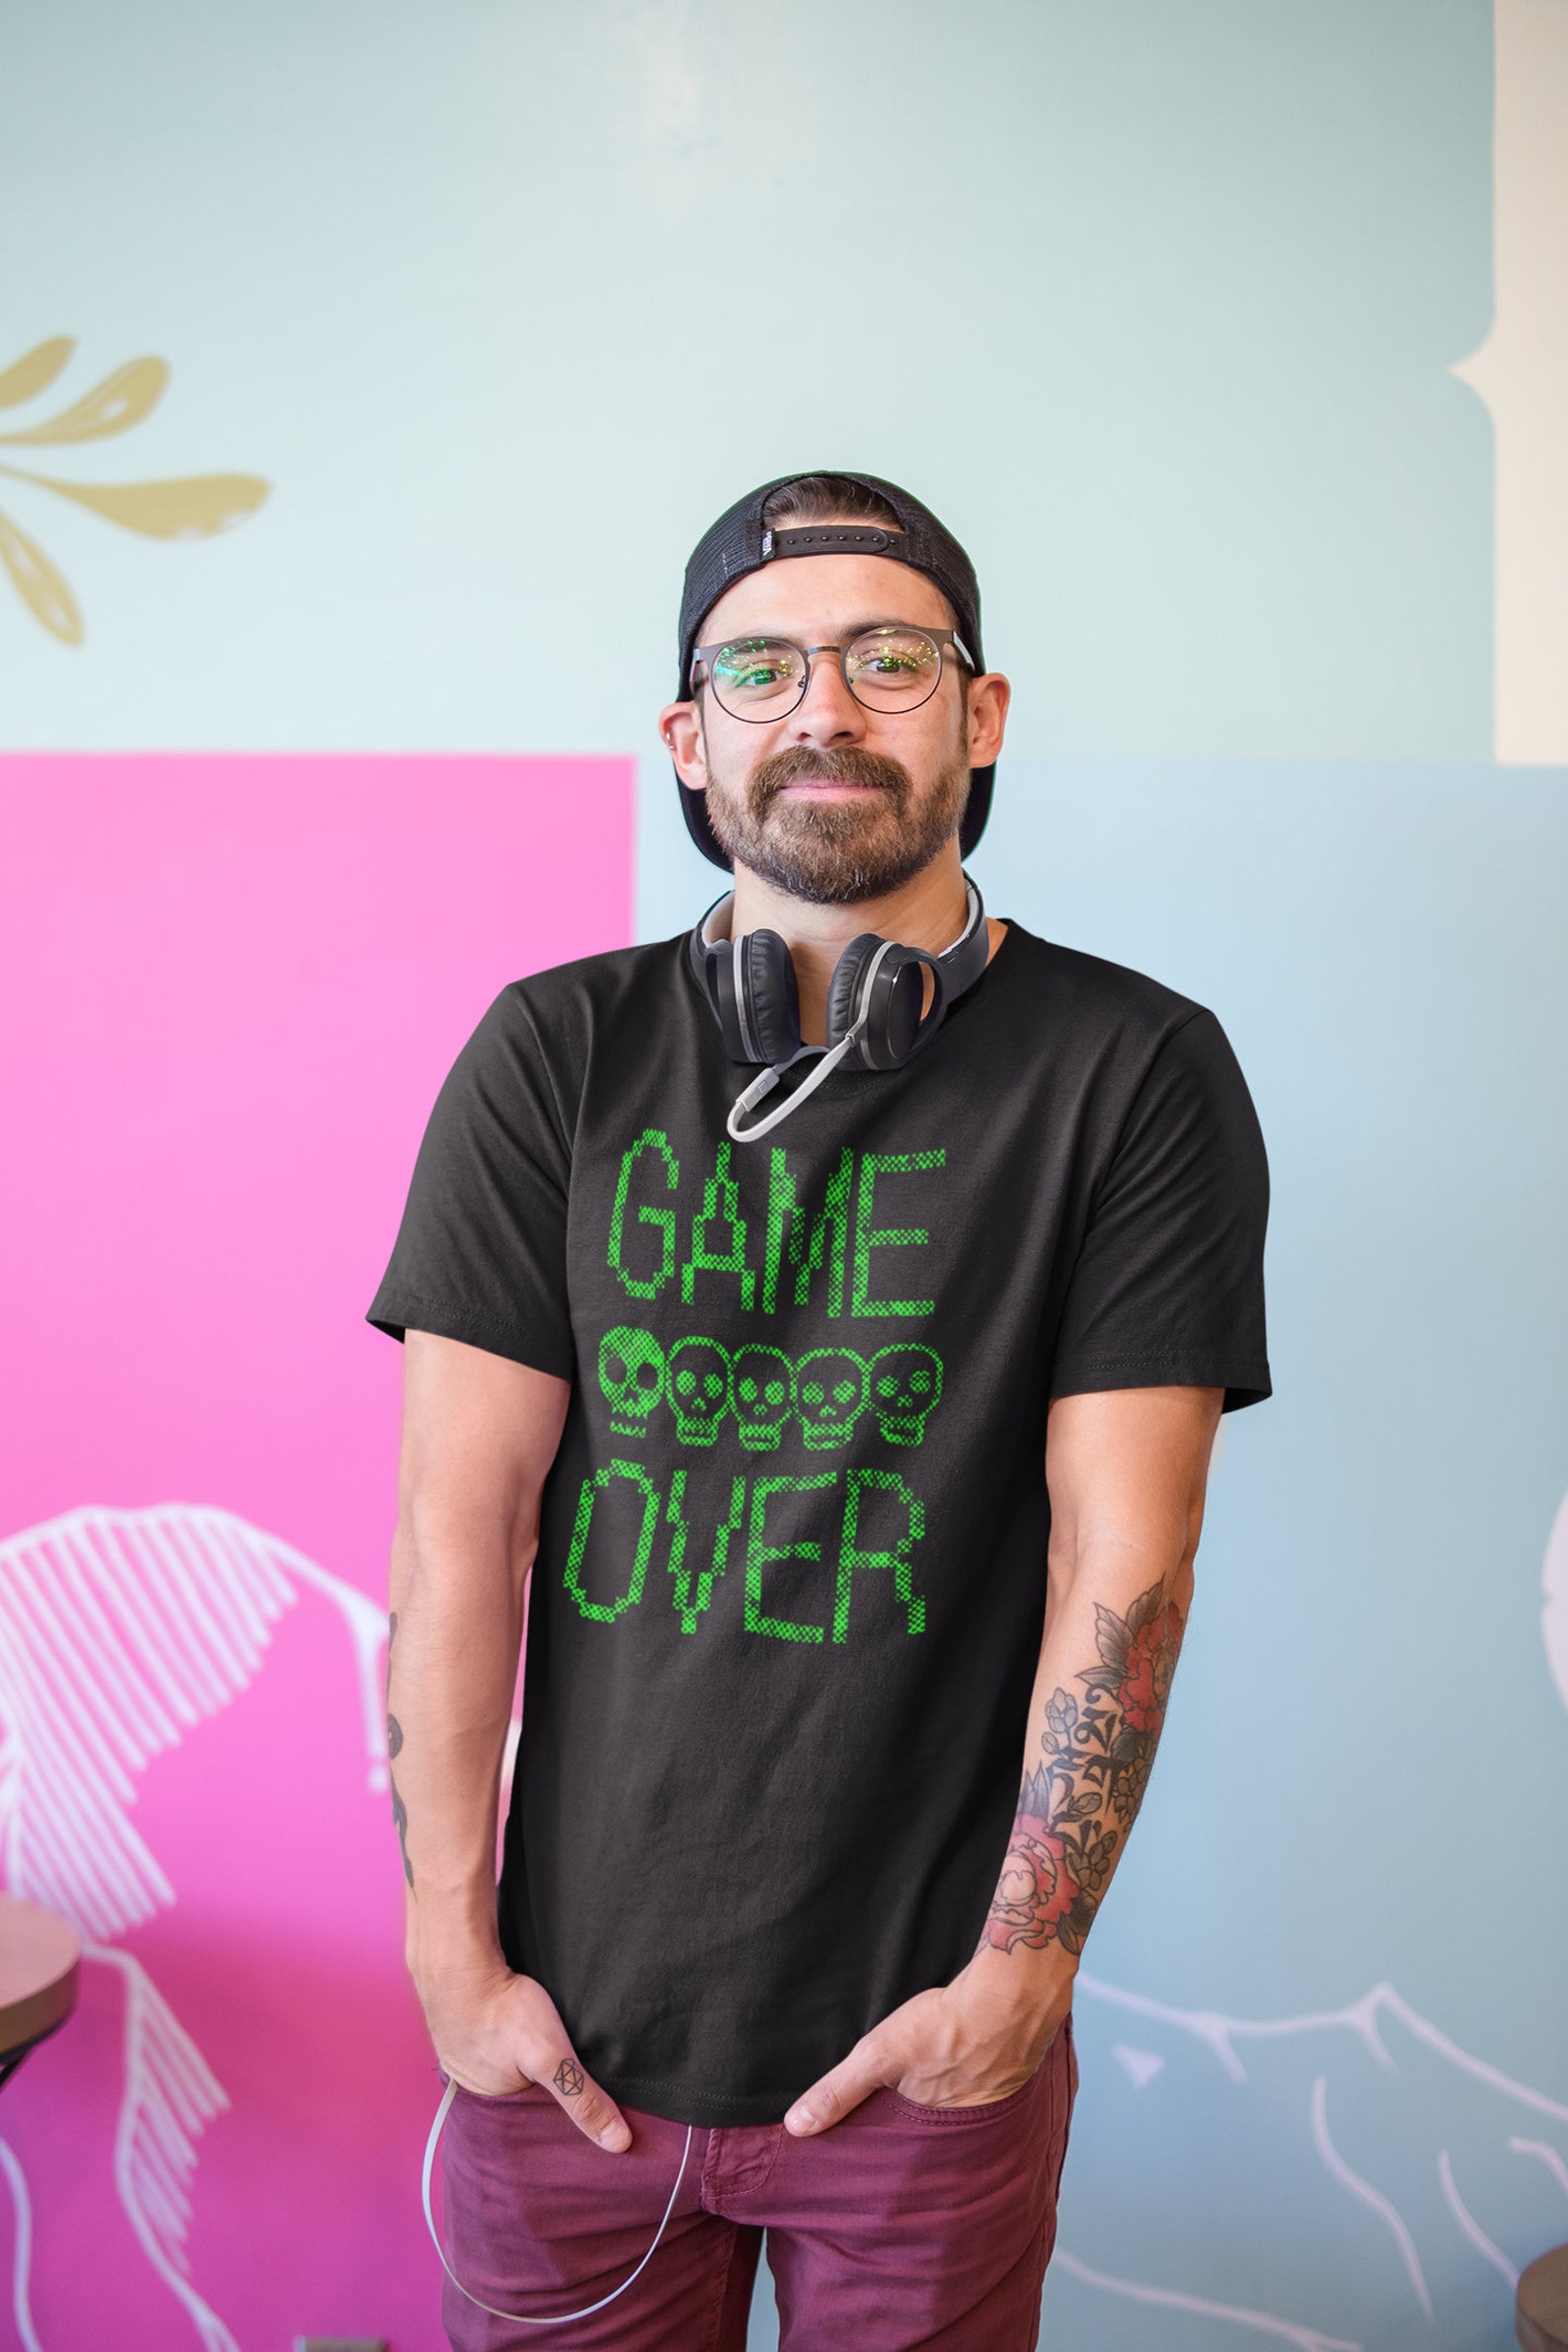 Game Over Shirt Game Shirt Gamer Shirt Shirt for Gamer - Etsy